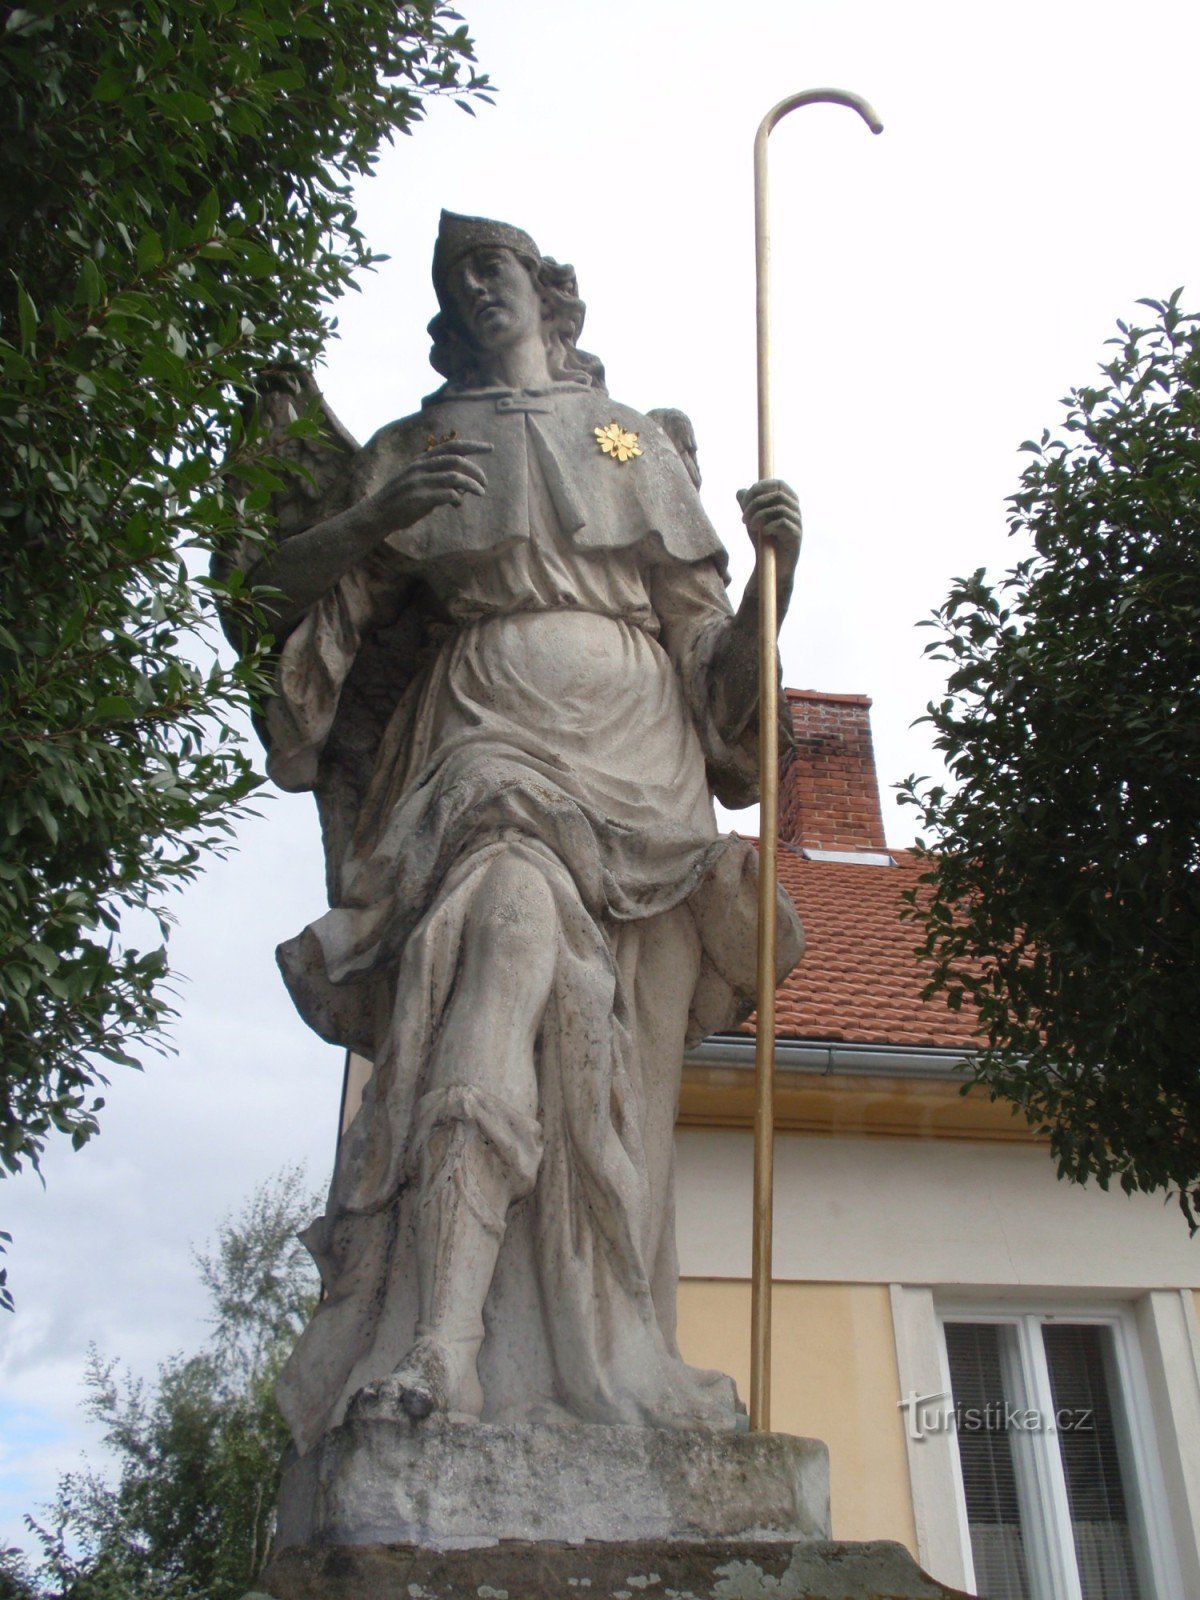 Estatua del arcángel Rafael en Rájc-Jestřebí